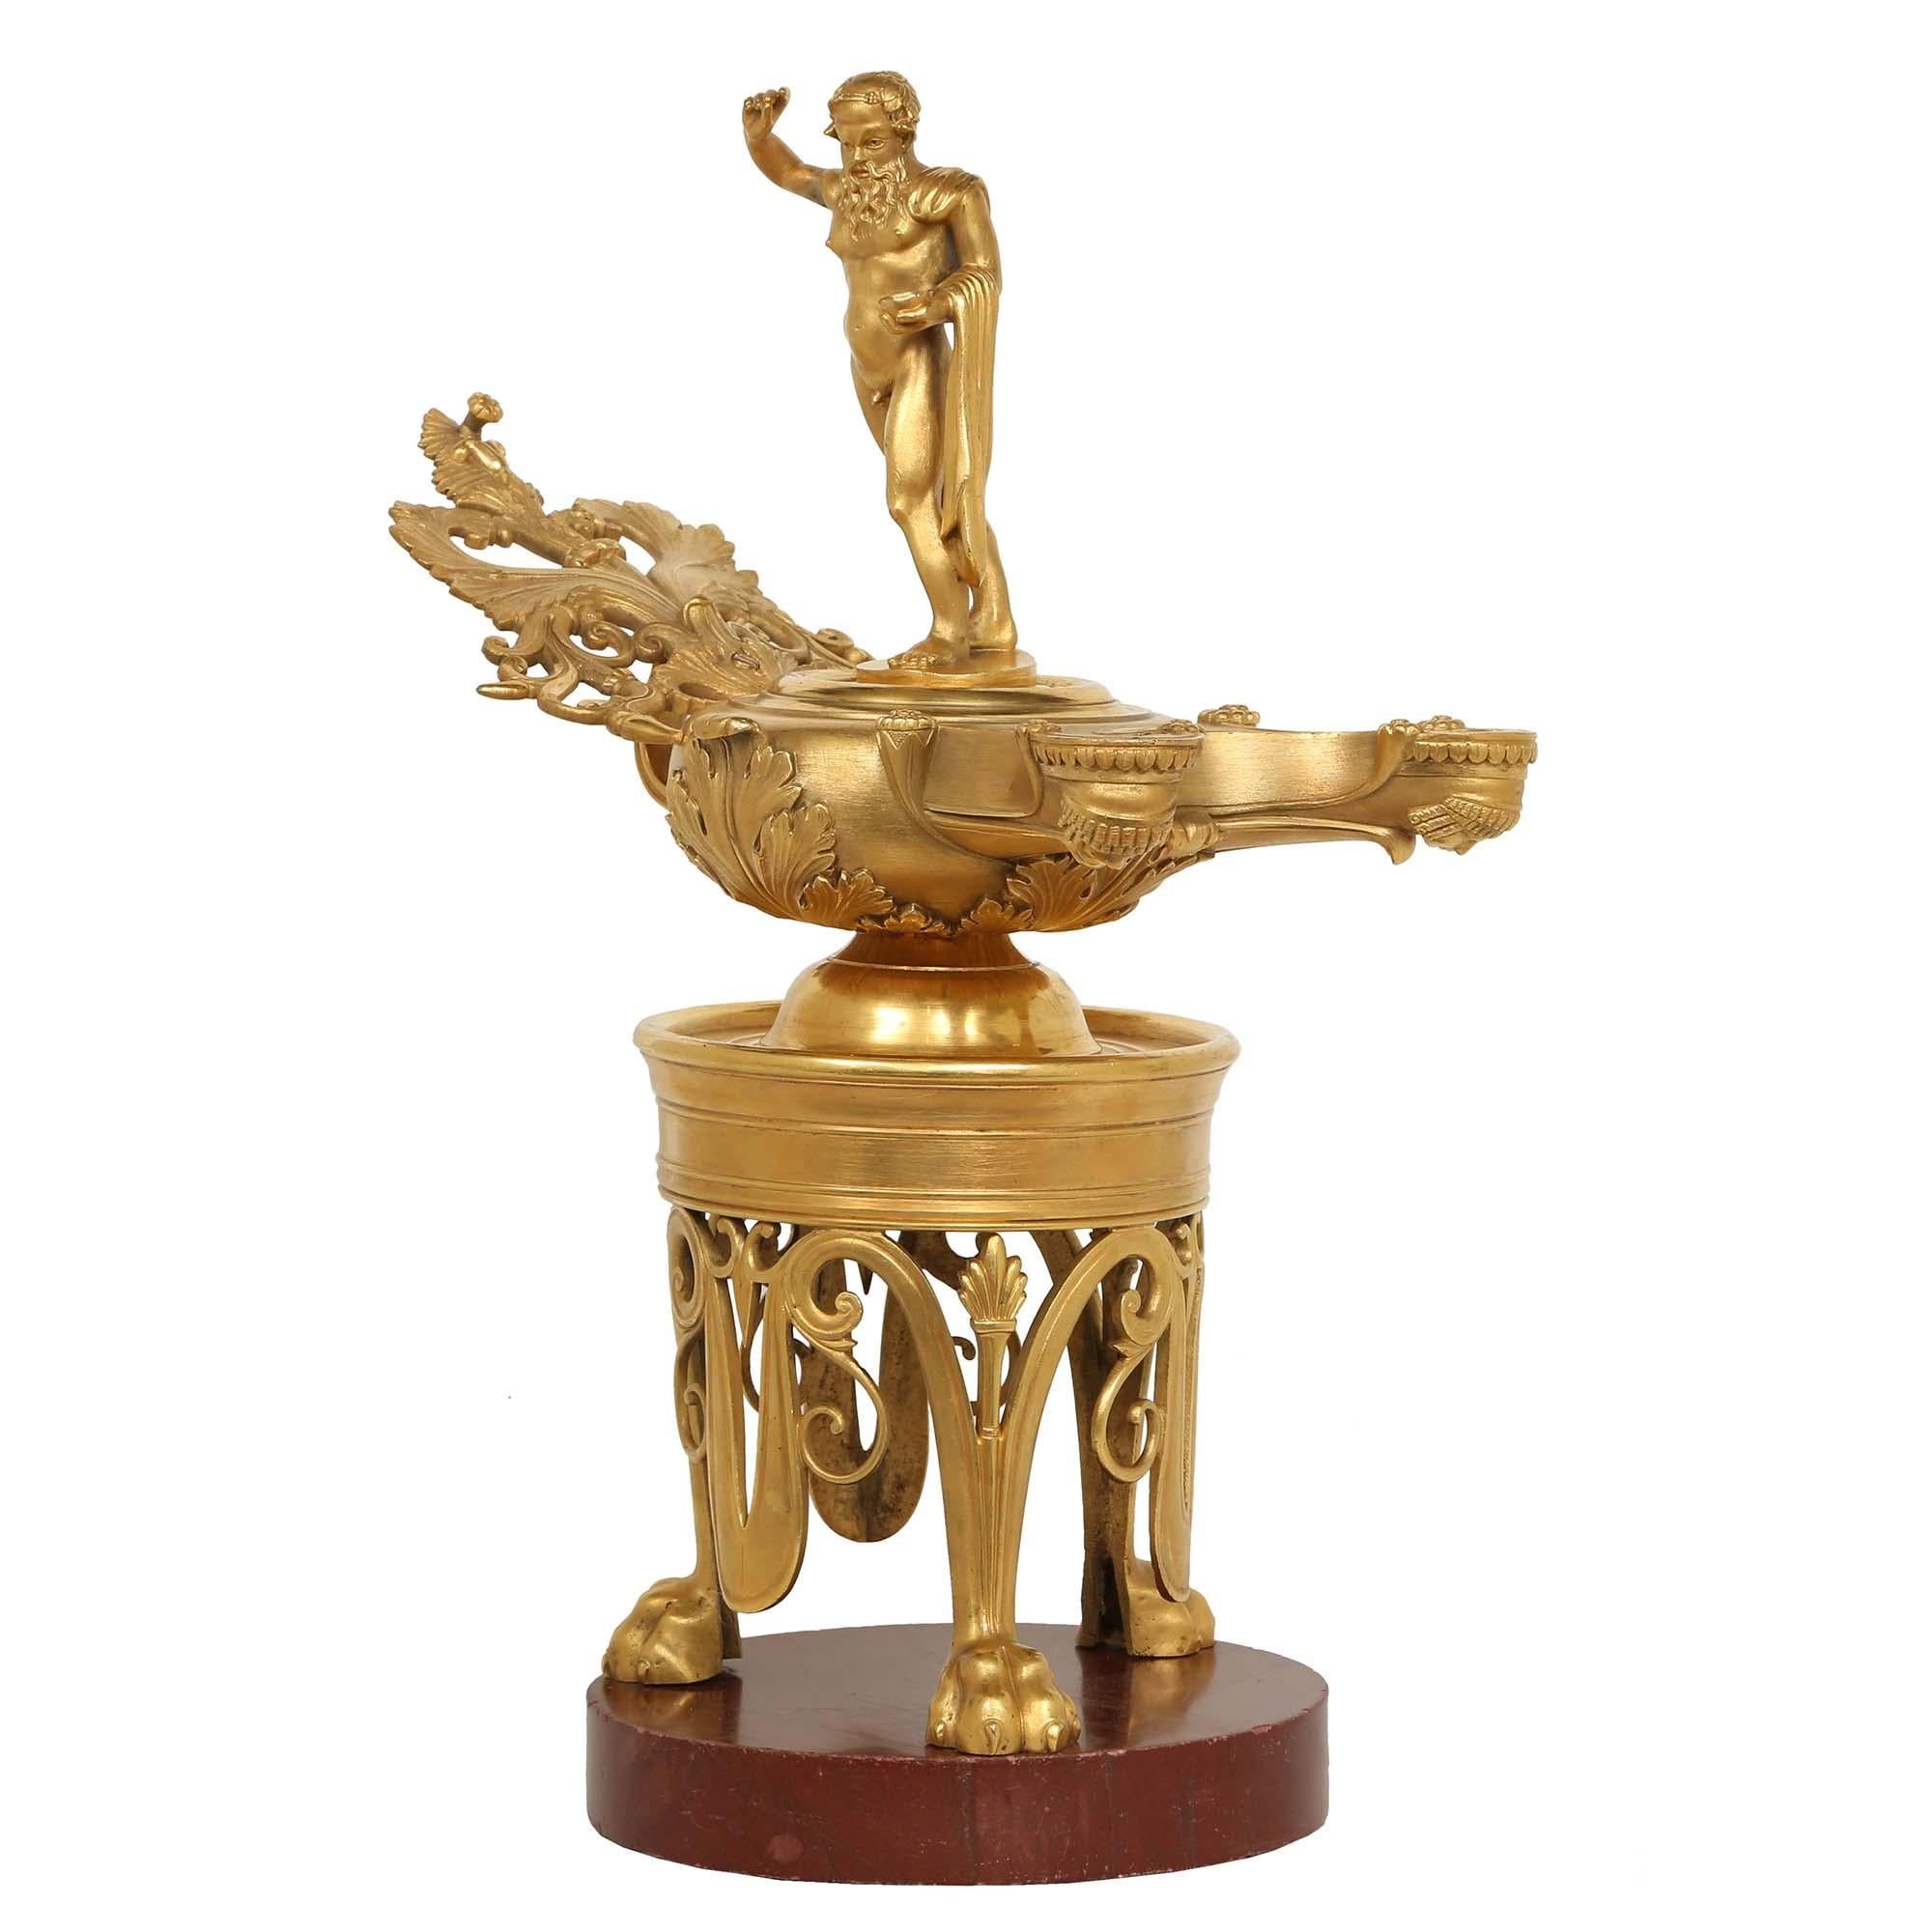 Une spectaculaire lanterne à huile en bronze doré en trois parties, de grande qualité, datant de la Renaissance française du 19ème siècle. La lanterne repose sur une base circulaire en marbre Rouge de Vérone, sous trois beaux pieds à pattes en